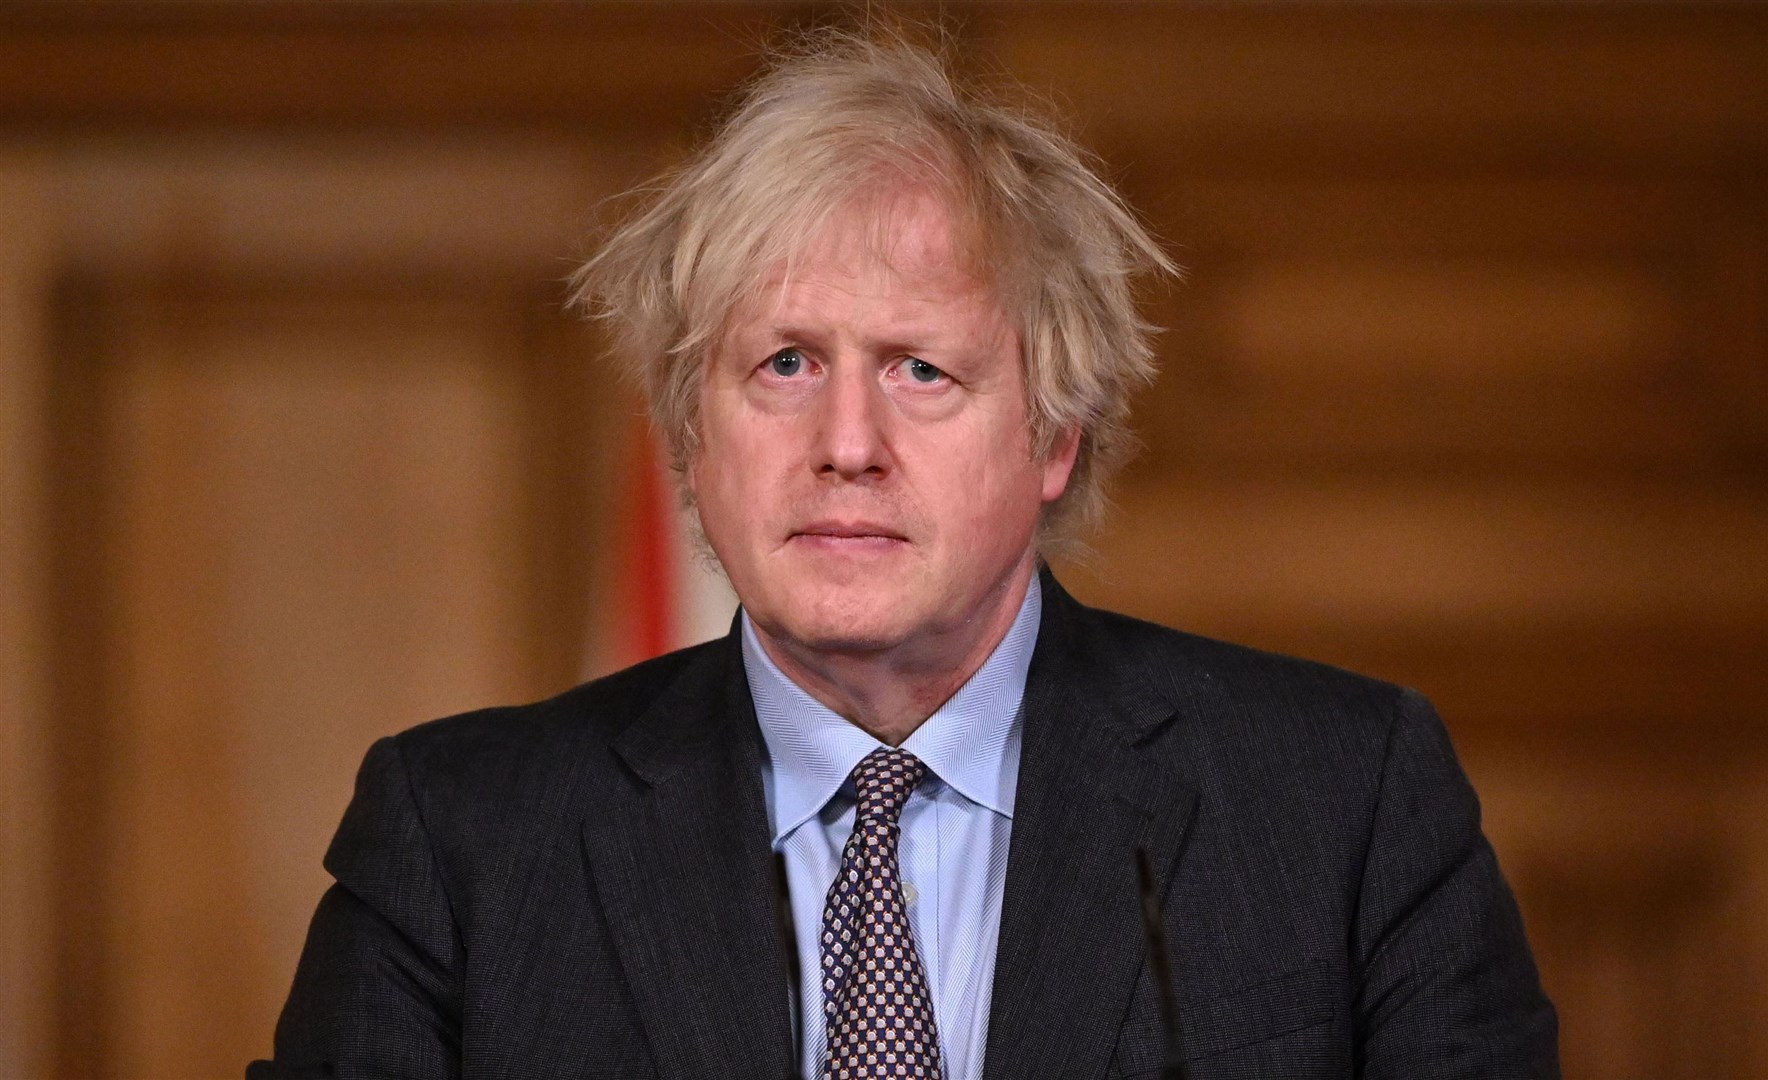 Prime Minister Boris Johnson (Leon Neal/PA)